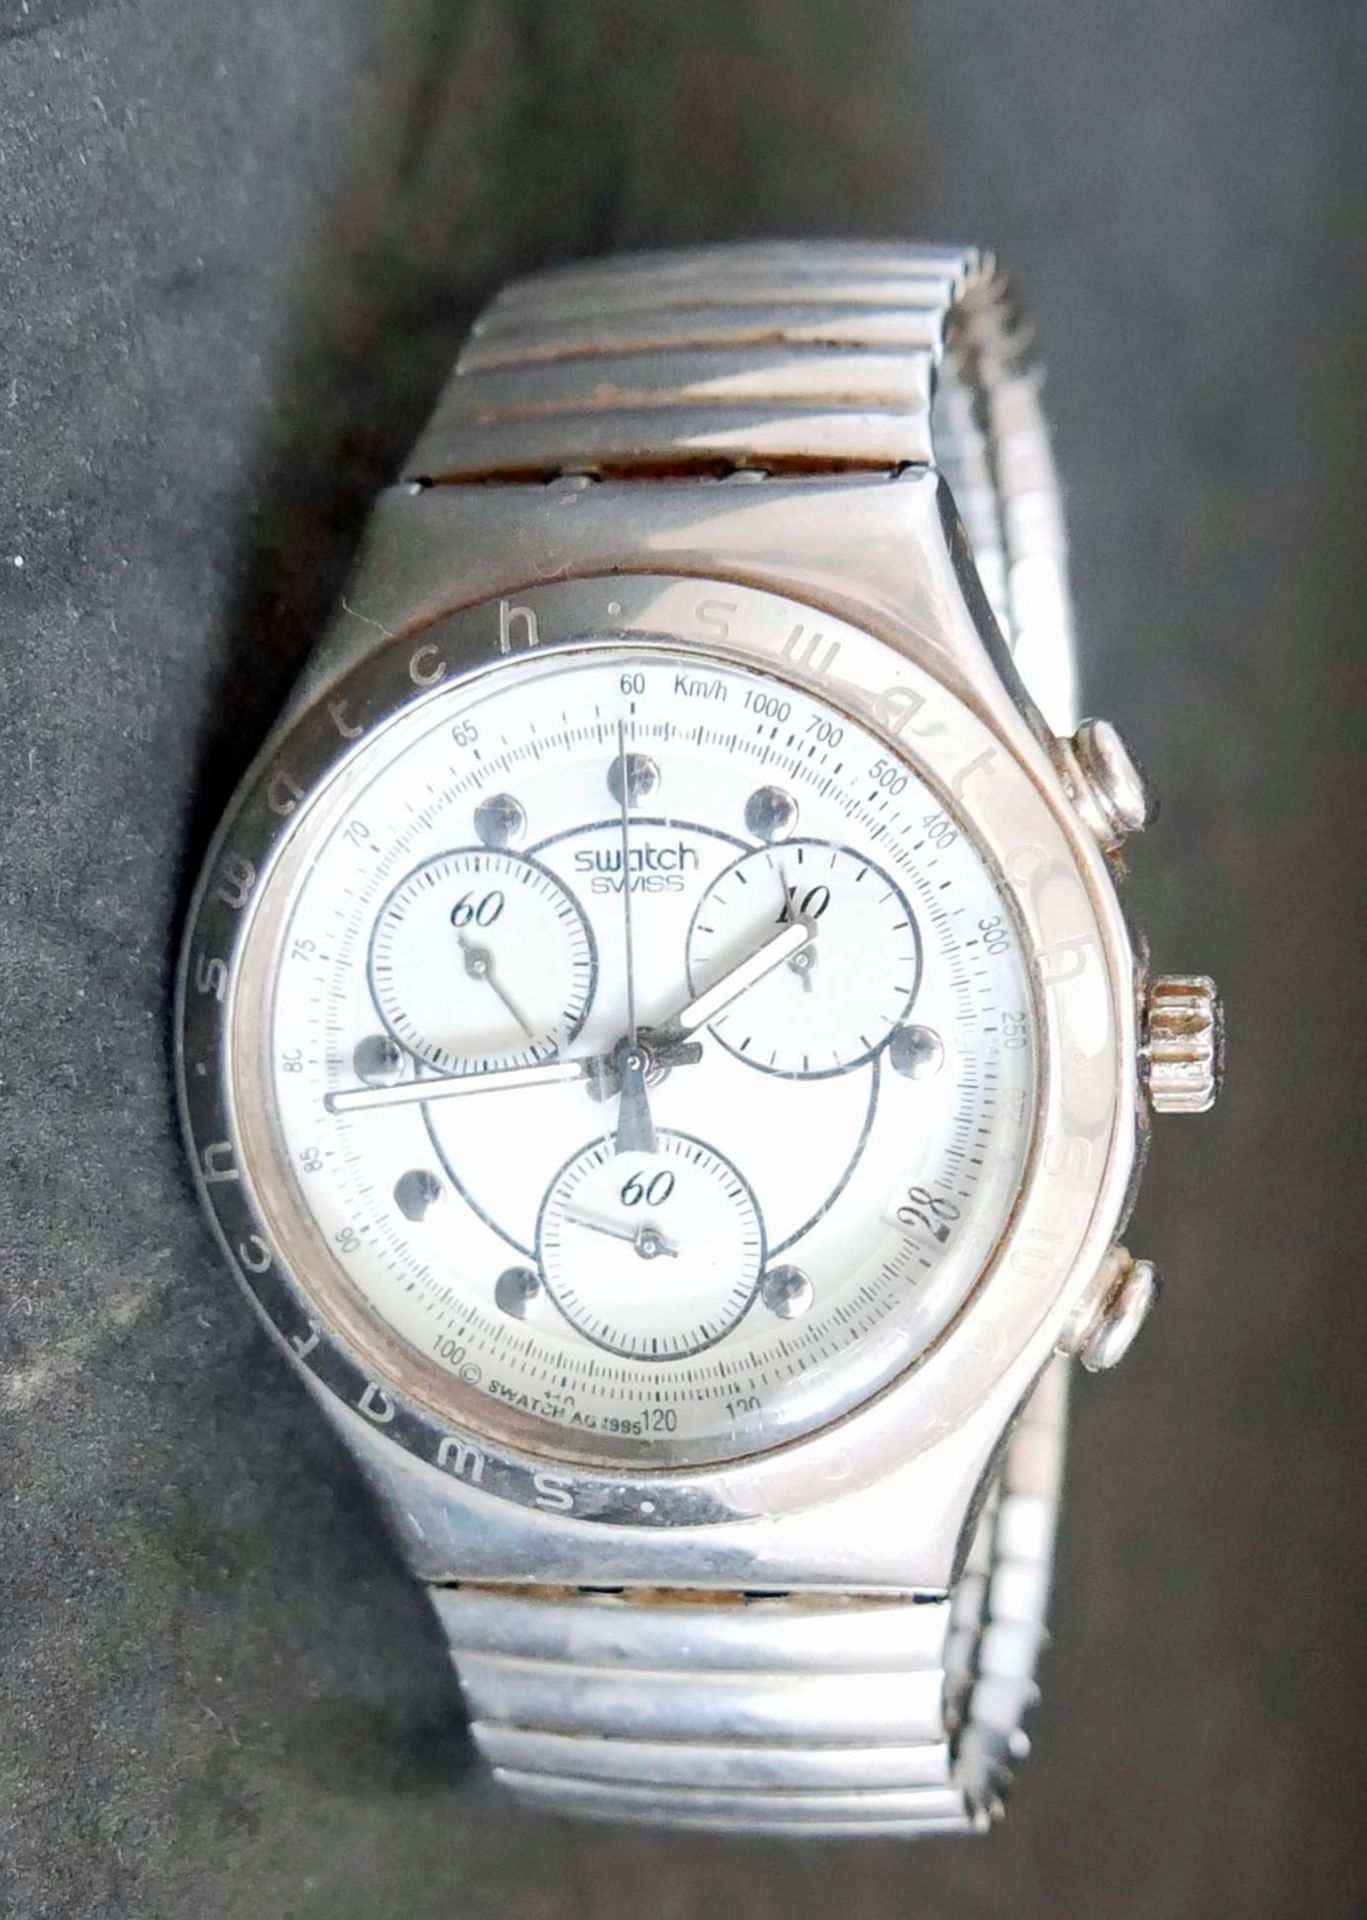 Herren Armbanduhr "Swatch Swiss" Funktion nicht geprüft